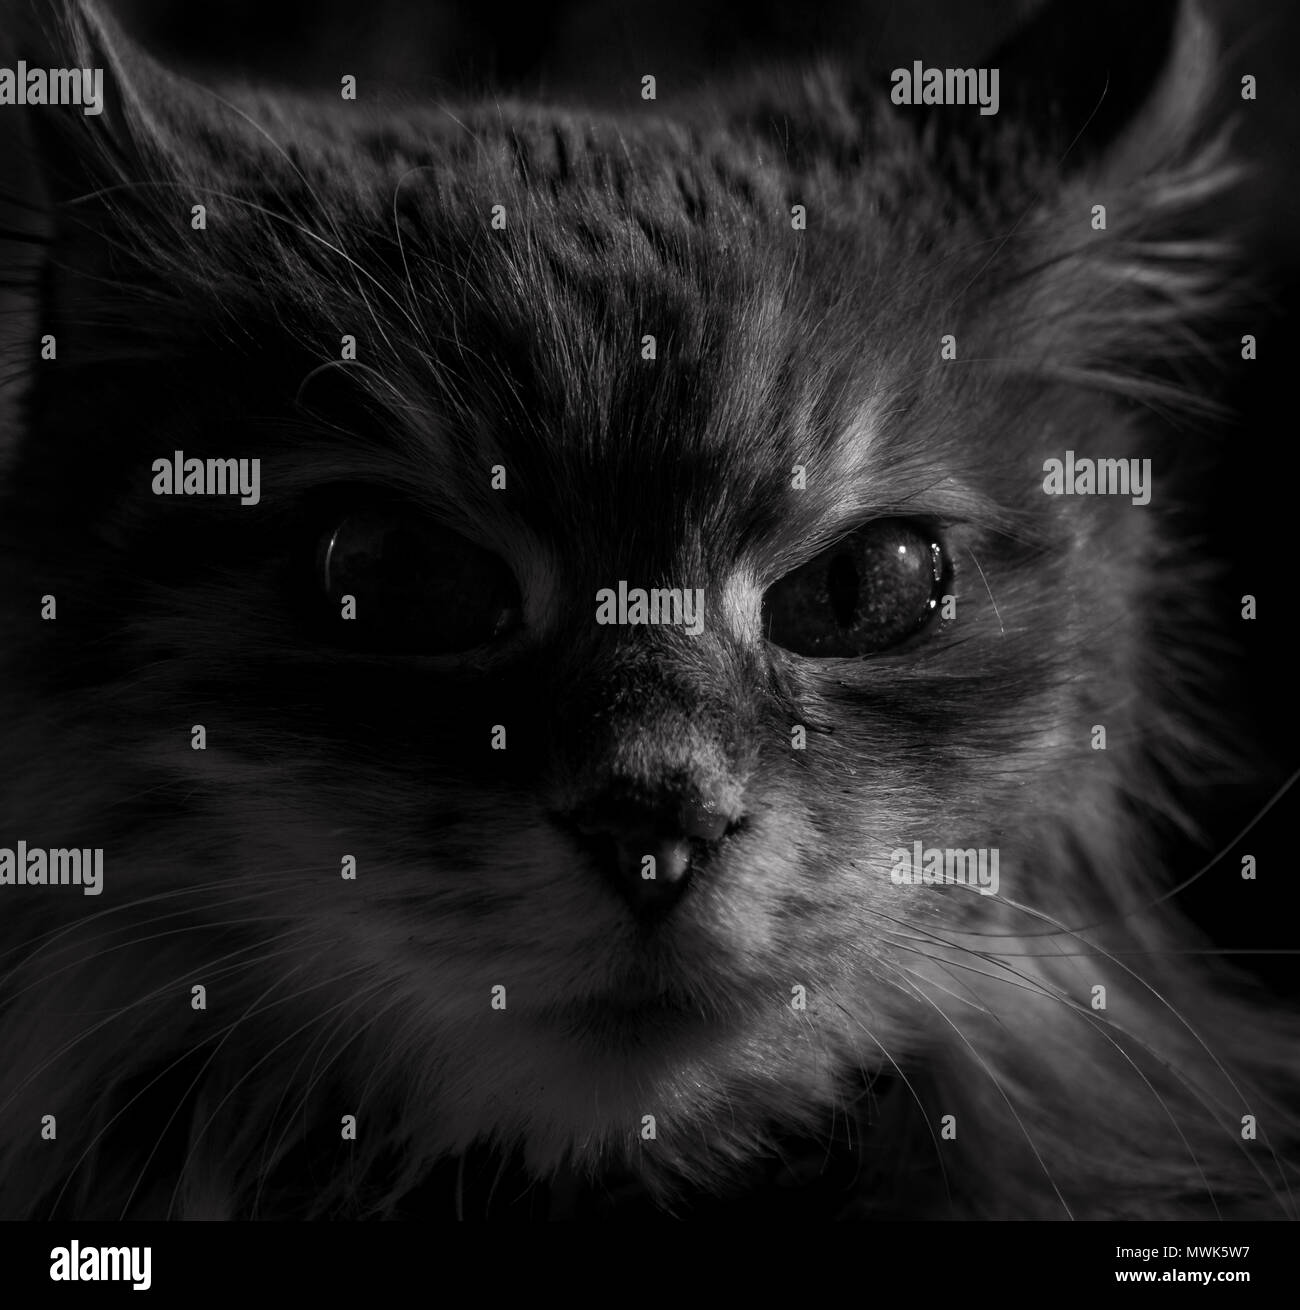 Noir et blanc haute qualité portrait de la face d'un chat Banque D'Images